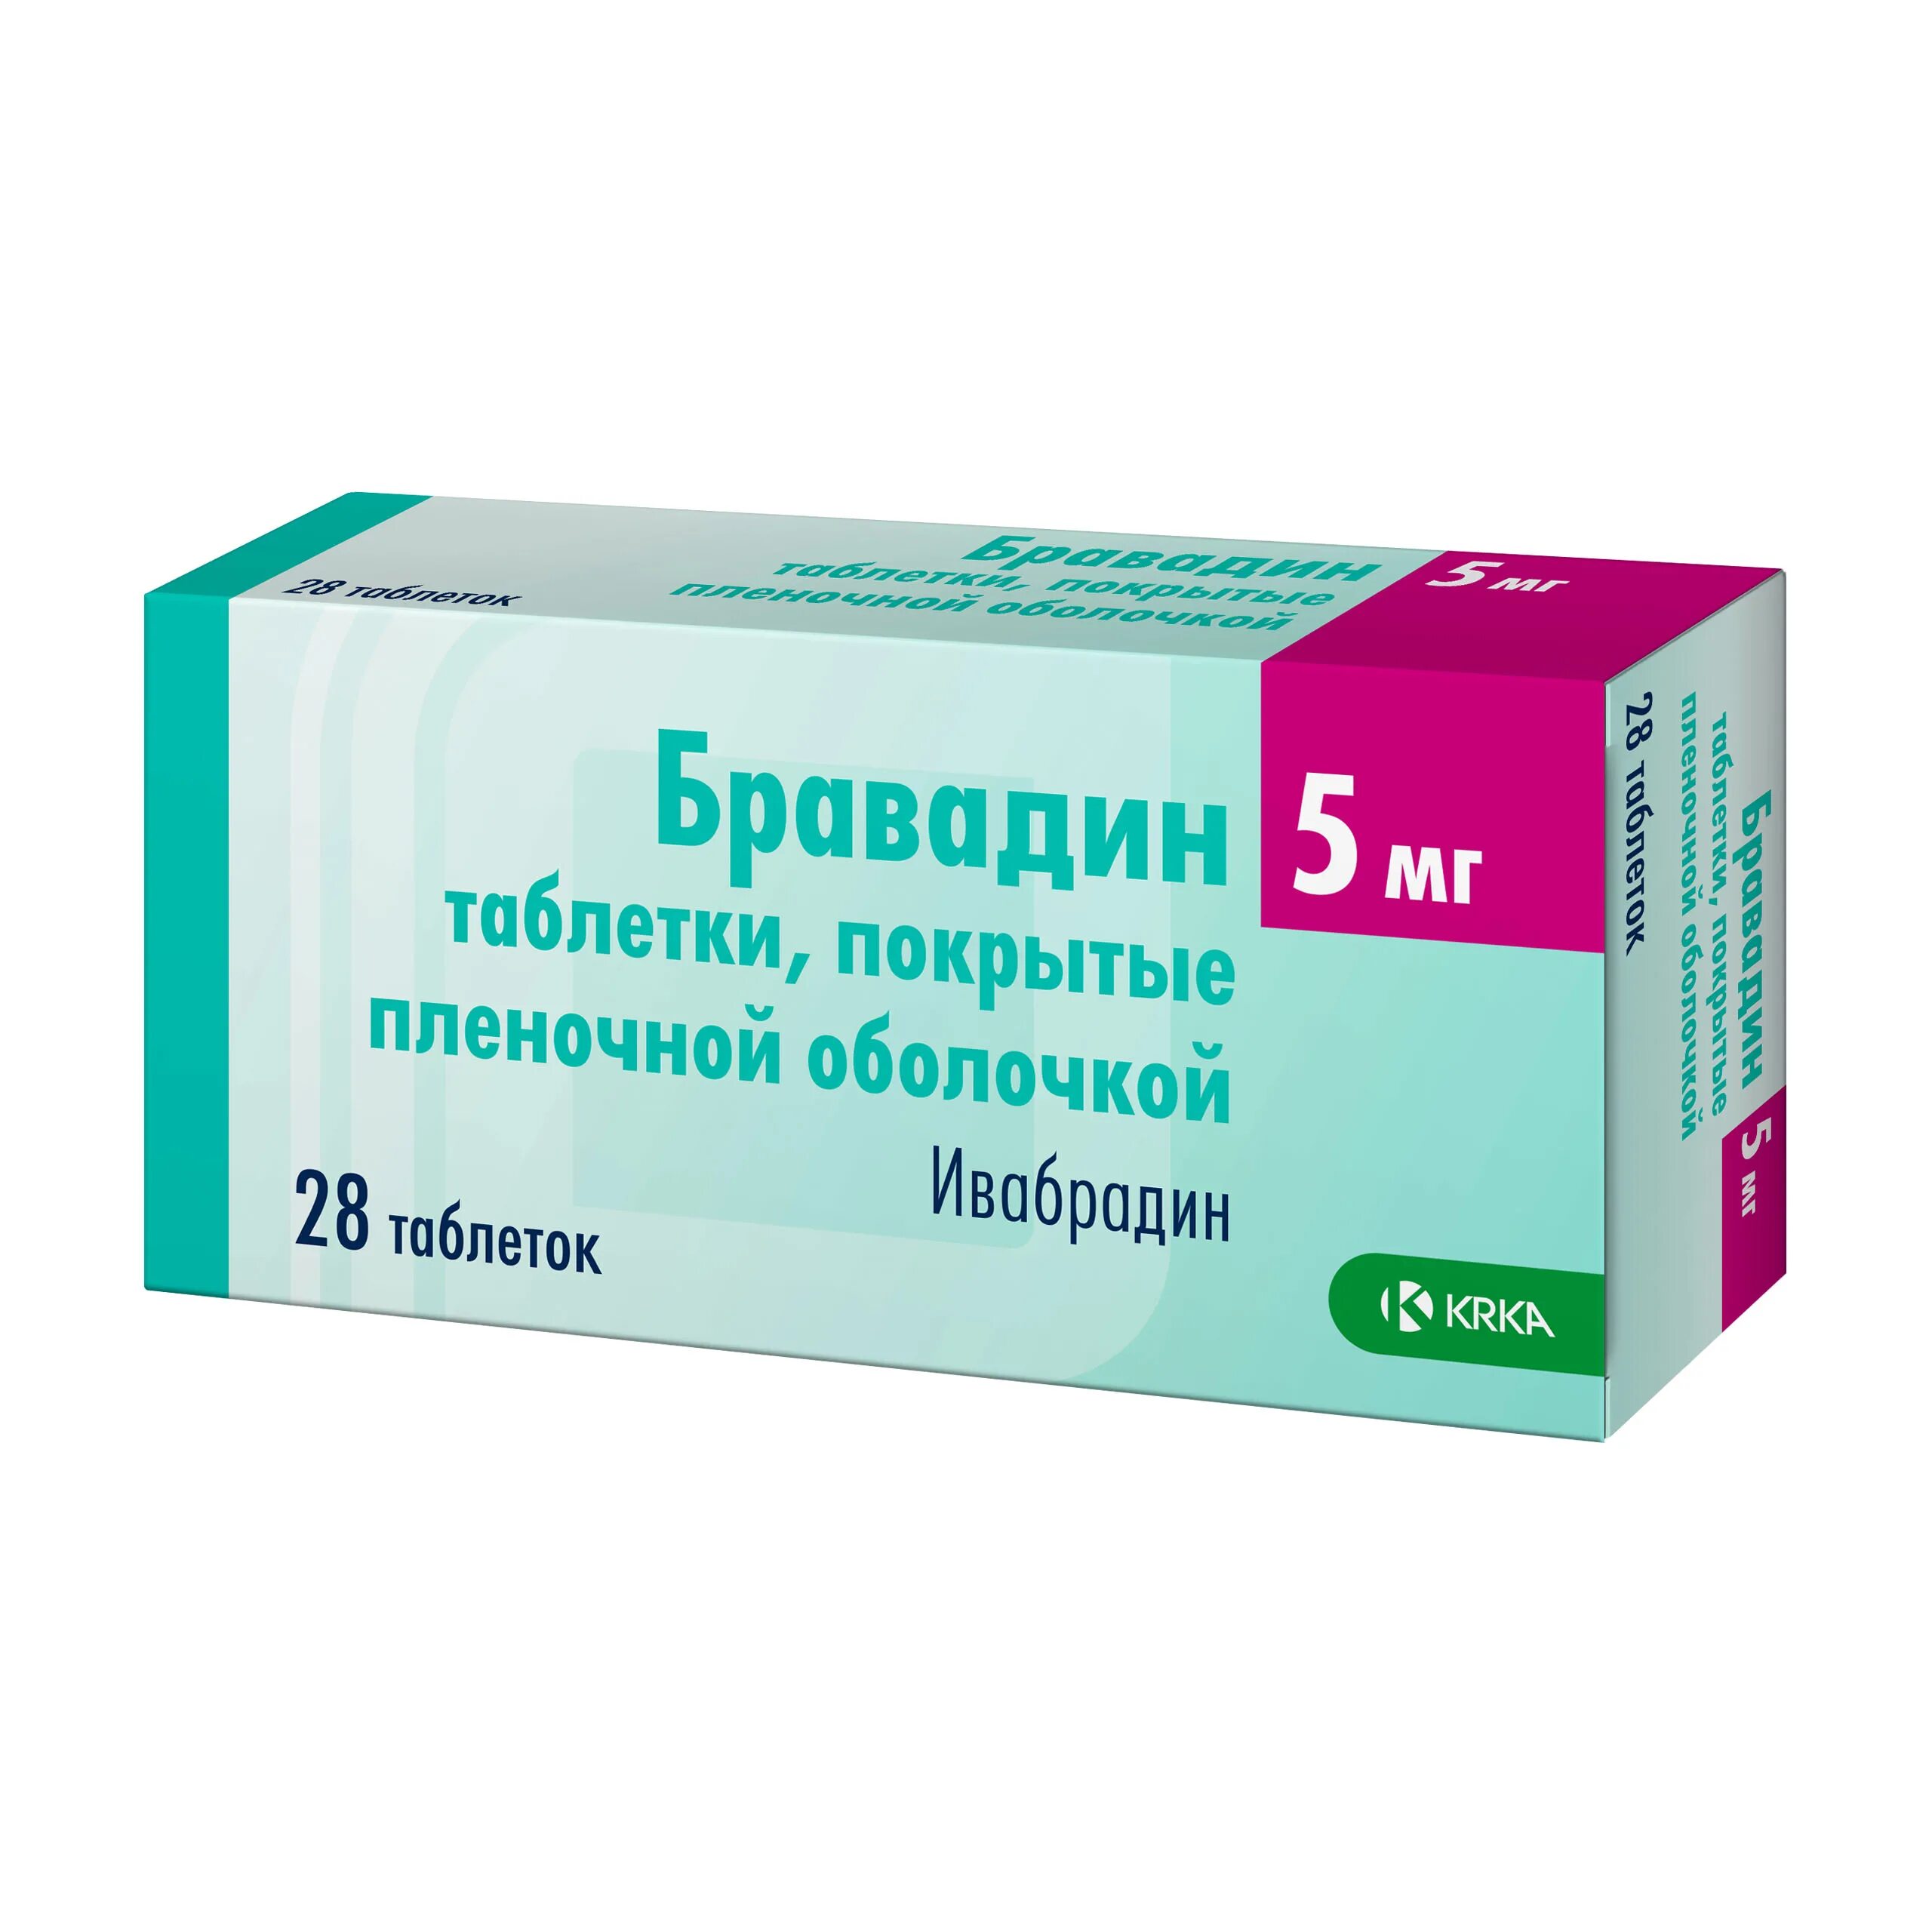 Ивабрадин 5 инструкция по применению отзывы аналоги. Рисперидон КРКА 2мг. Ивабрадин канон 5 мг. Рисперидон 4 мг таблетка. Бикситор 60.